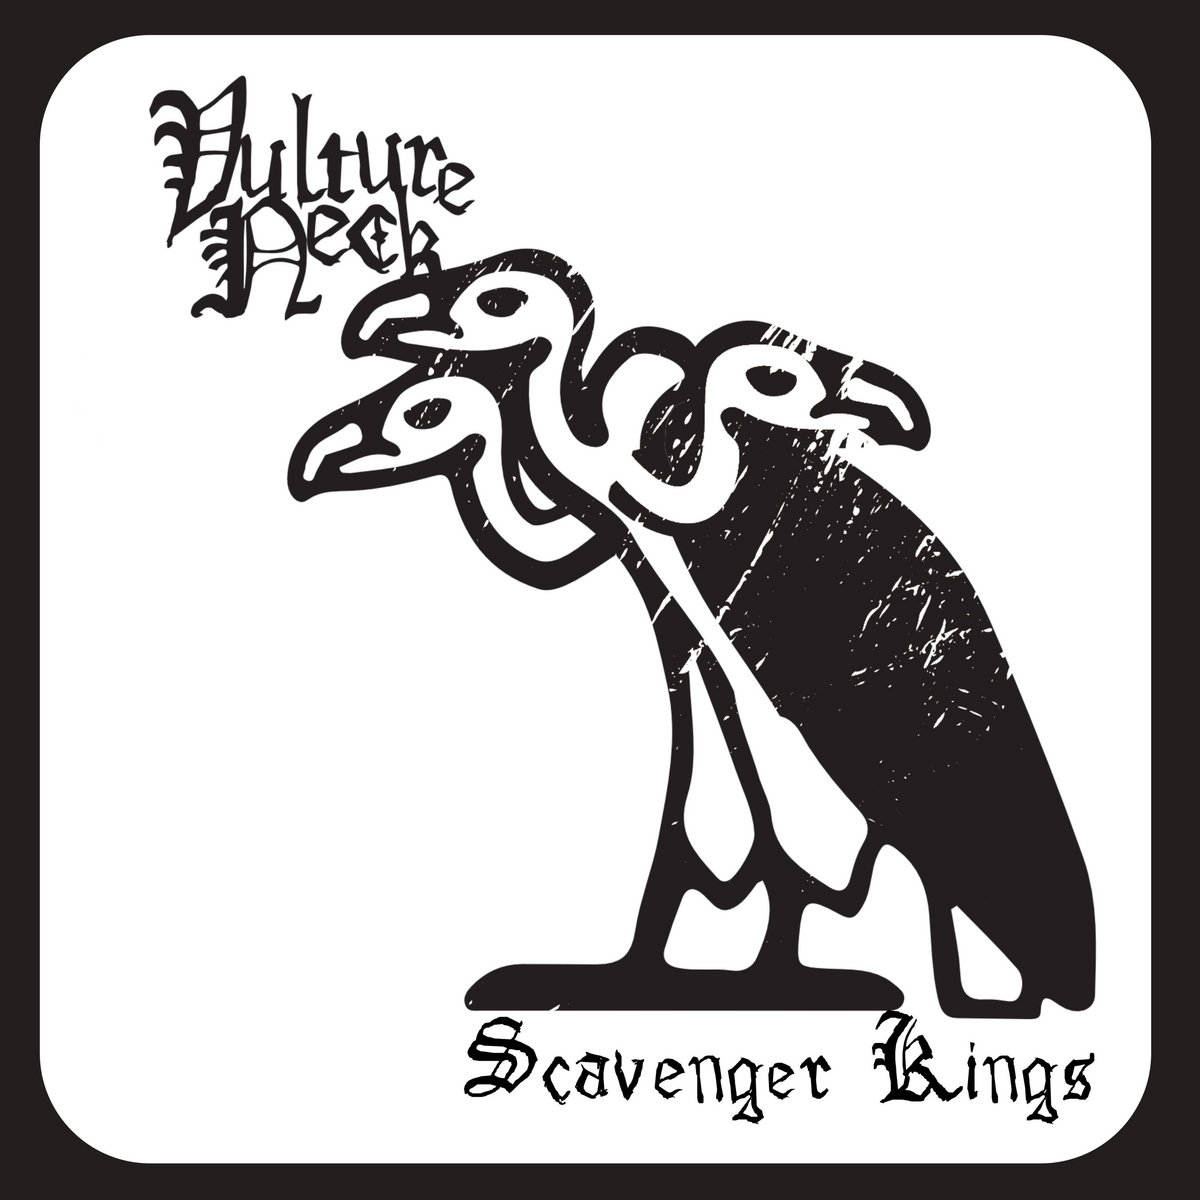 Vulture Neck - "Scavenger Kings" - 2023